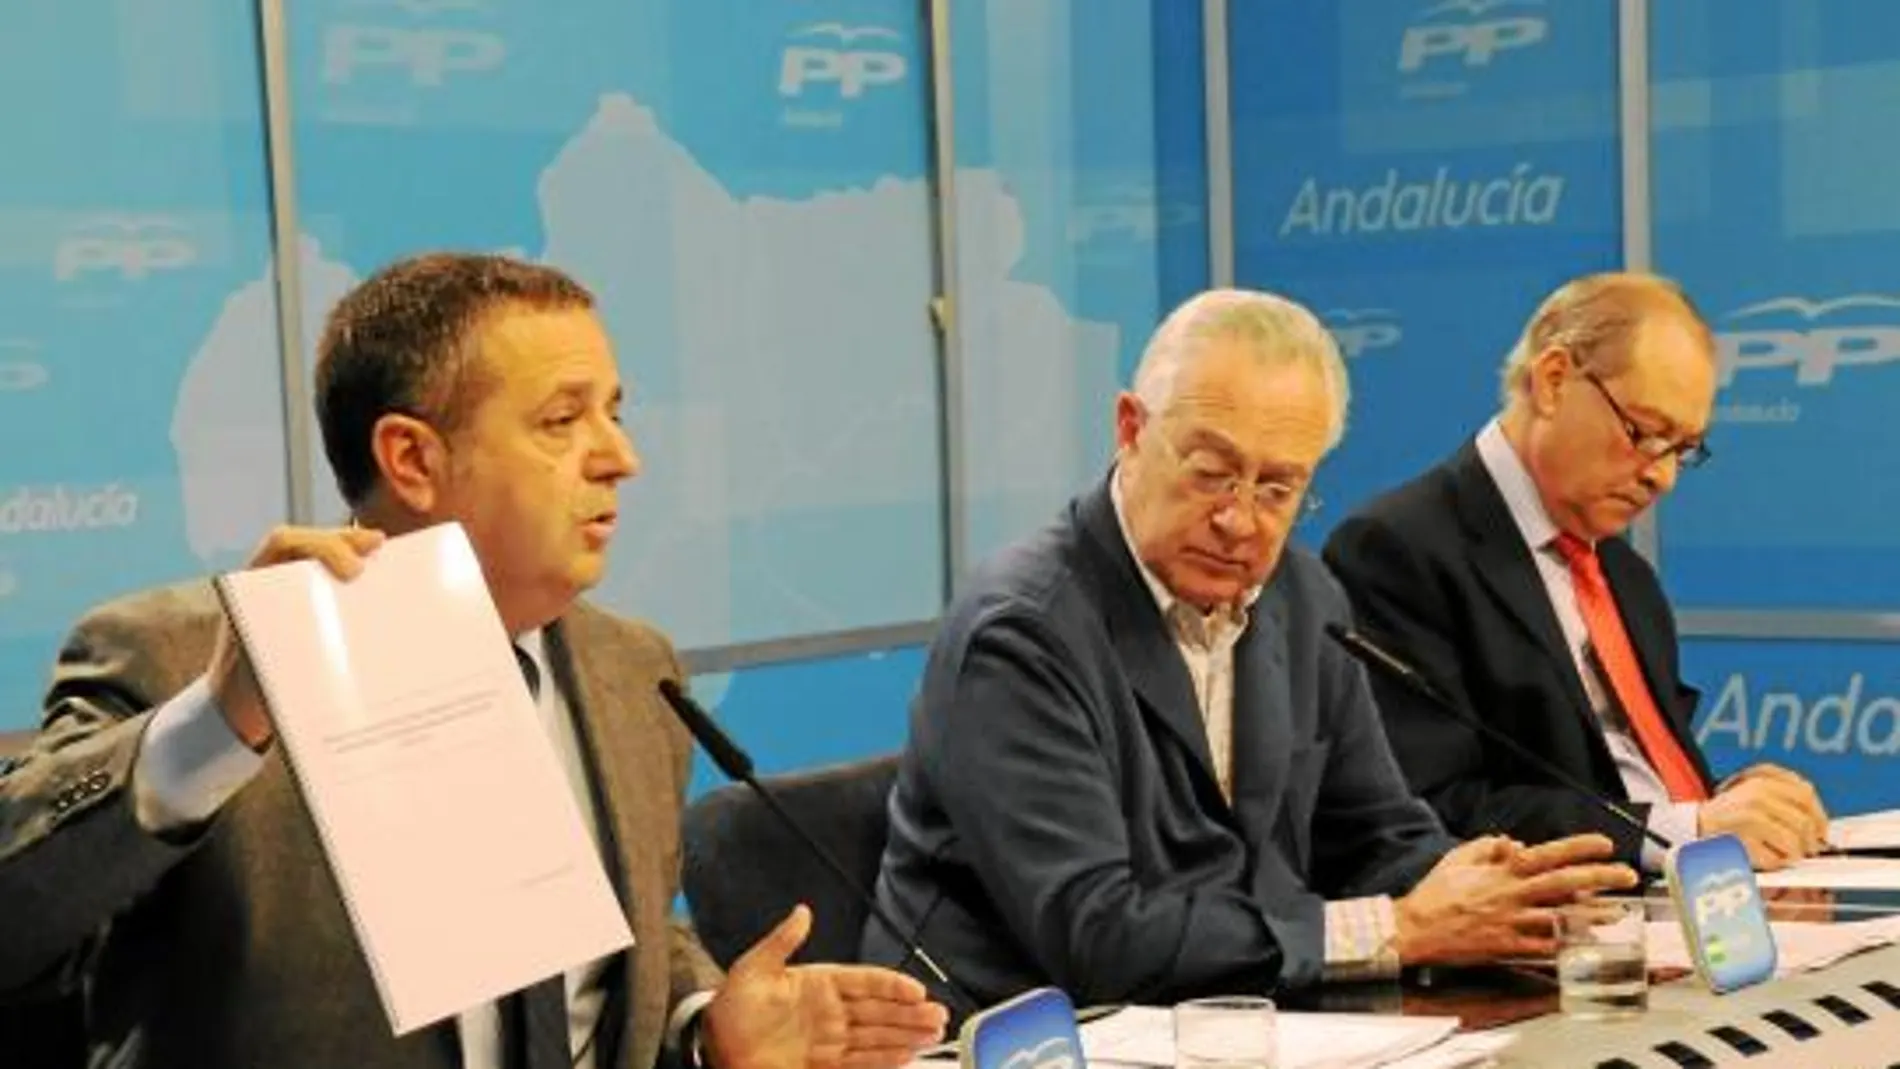 Salvador Fuentes, Jaime Raynaud y Jorge Ramos, ayer, en la sede del PP-A, con el documento de la Junta